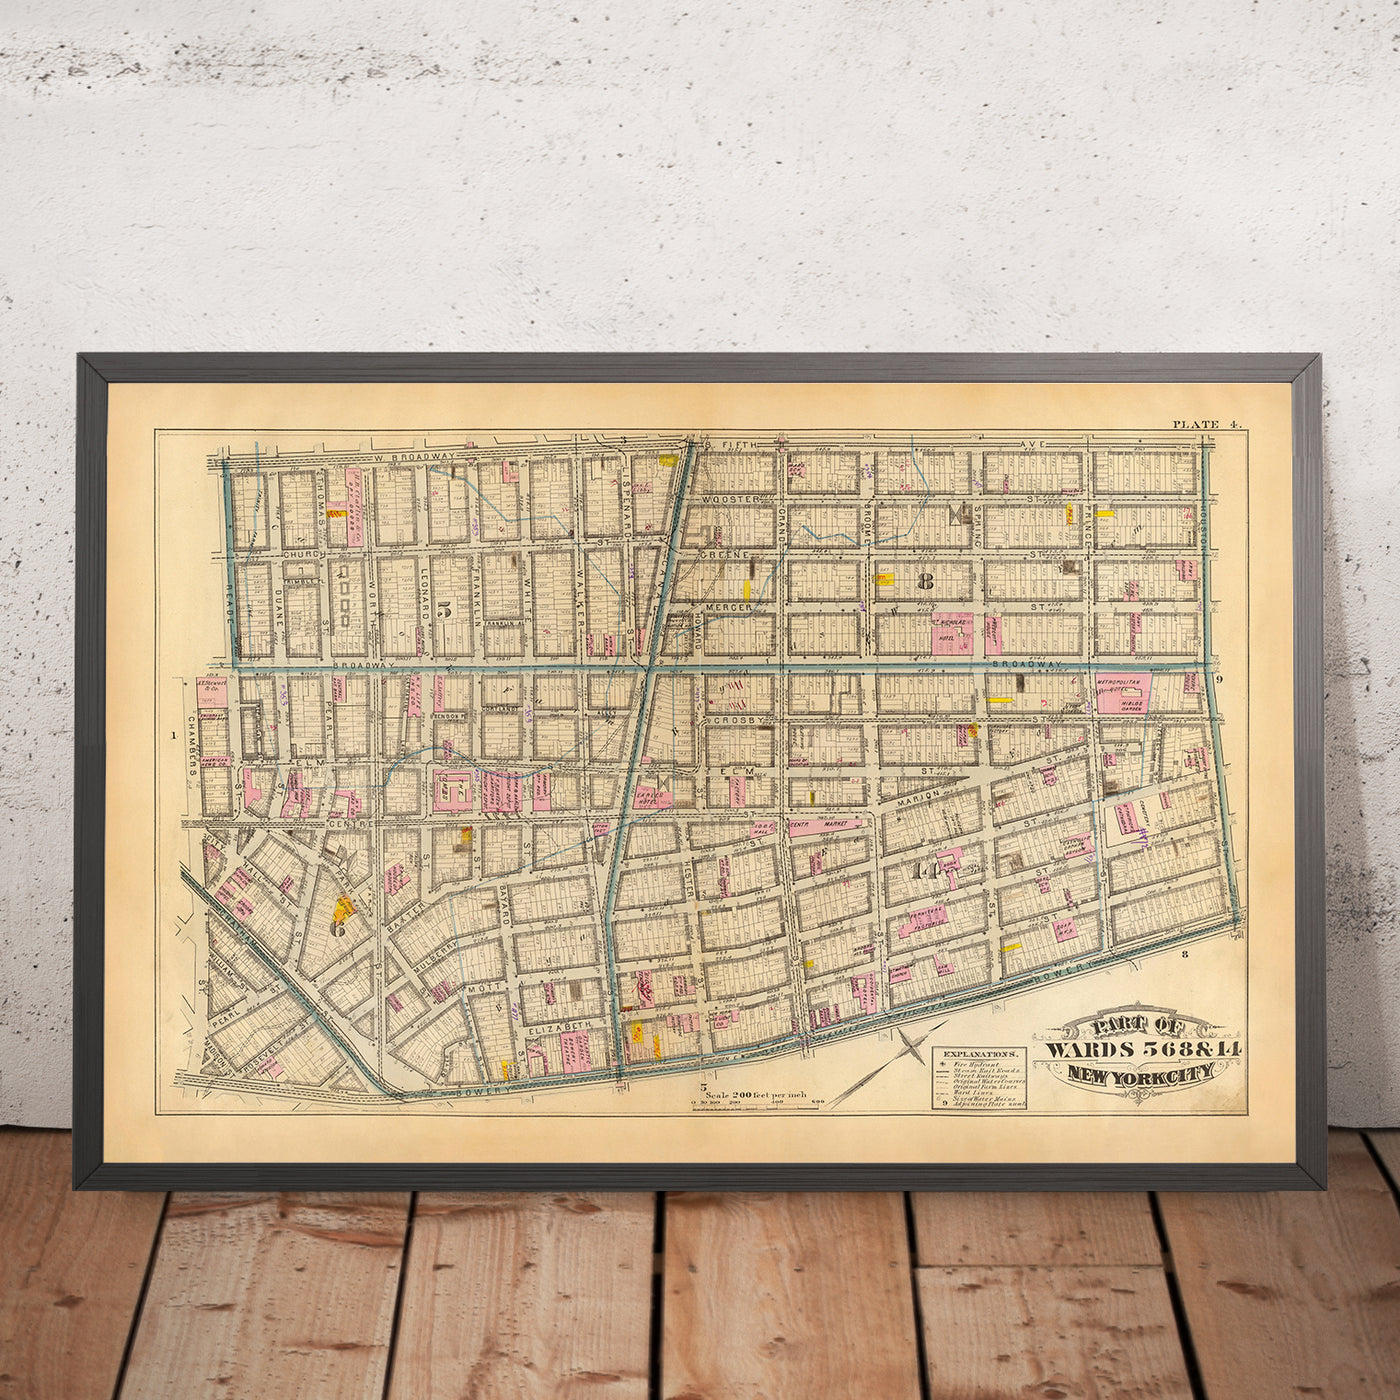 Ancienne carte du Lower Manhattan (quartiers 5, 6, 8 et 14) par Bromley, 1879 : SoHo, Little Italy, Civic Center, Chinatown, Five Points